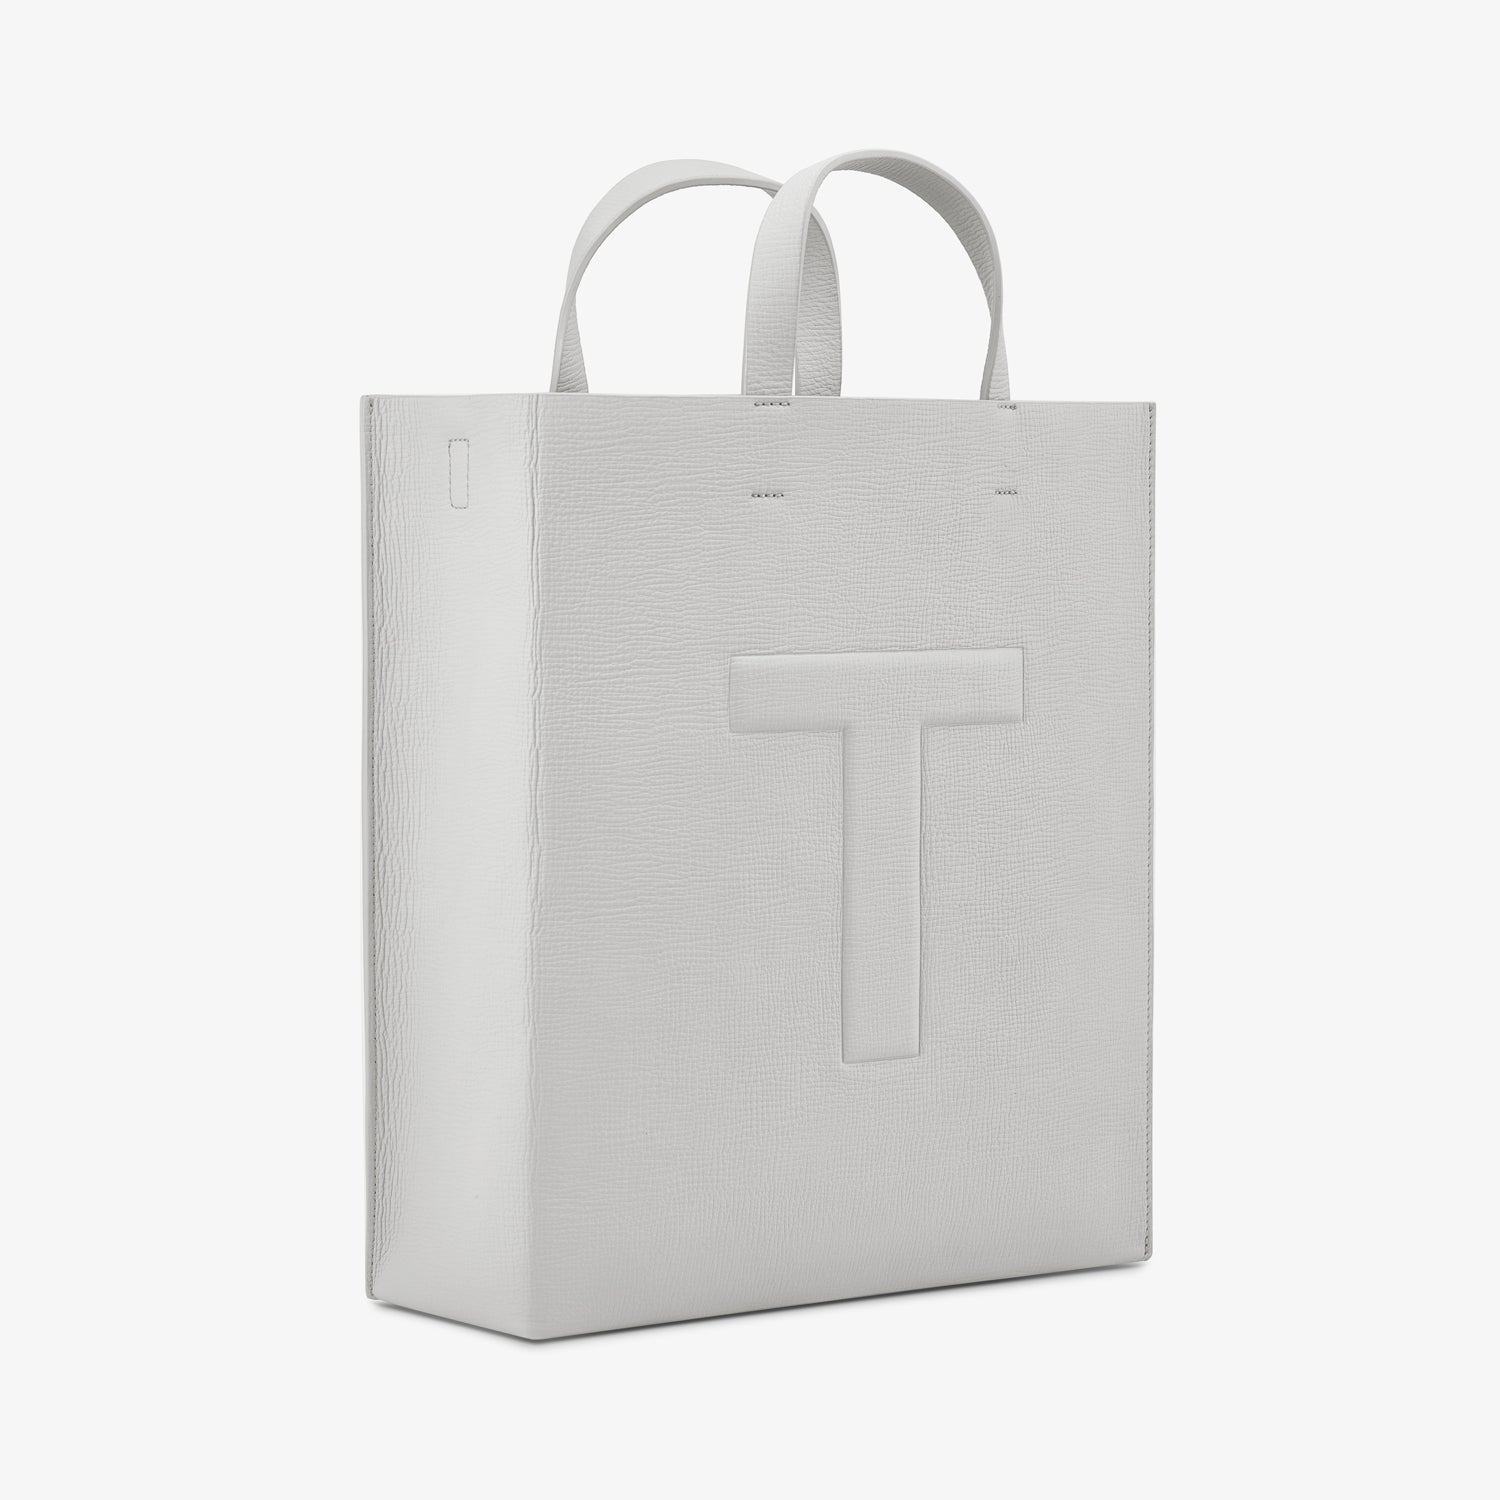 TUPLUS Travel Pro Tote Bag